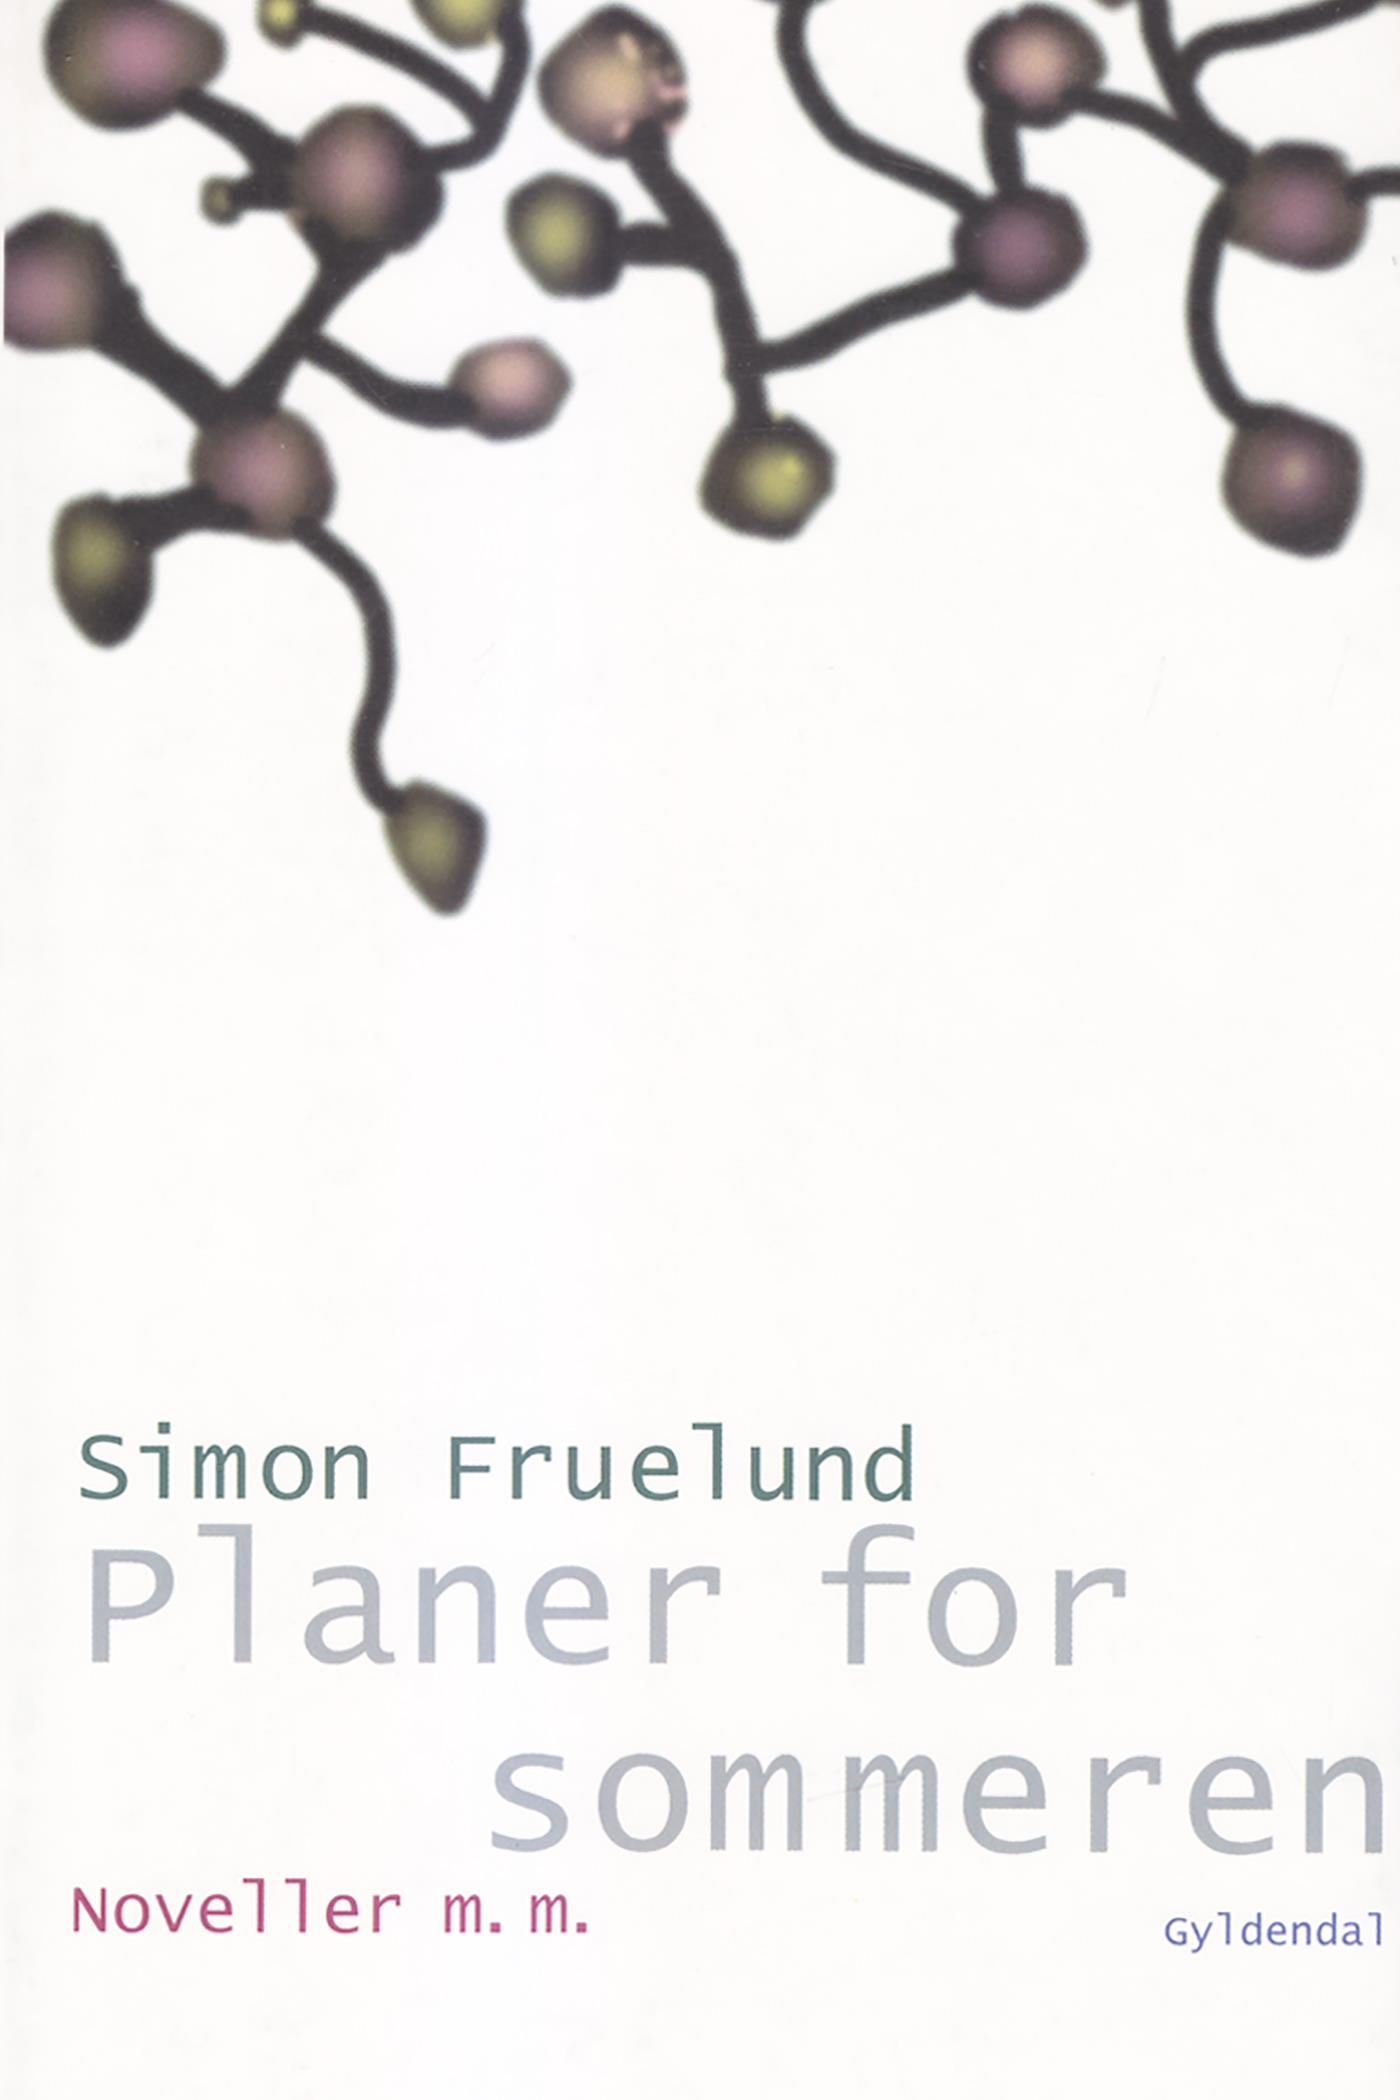 Planer for sommeren, e-bok av Simon Fruelund